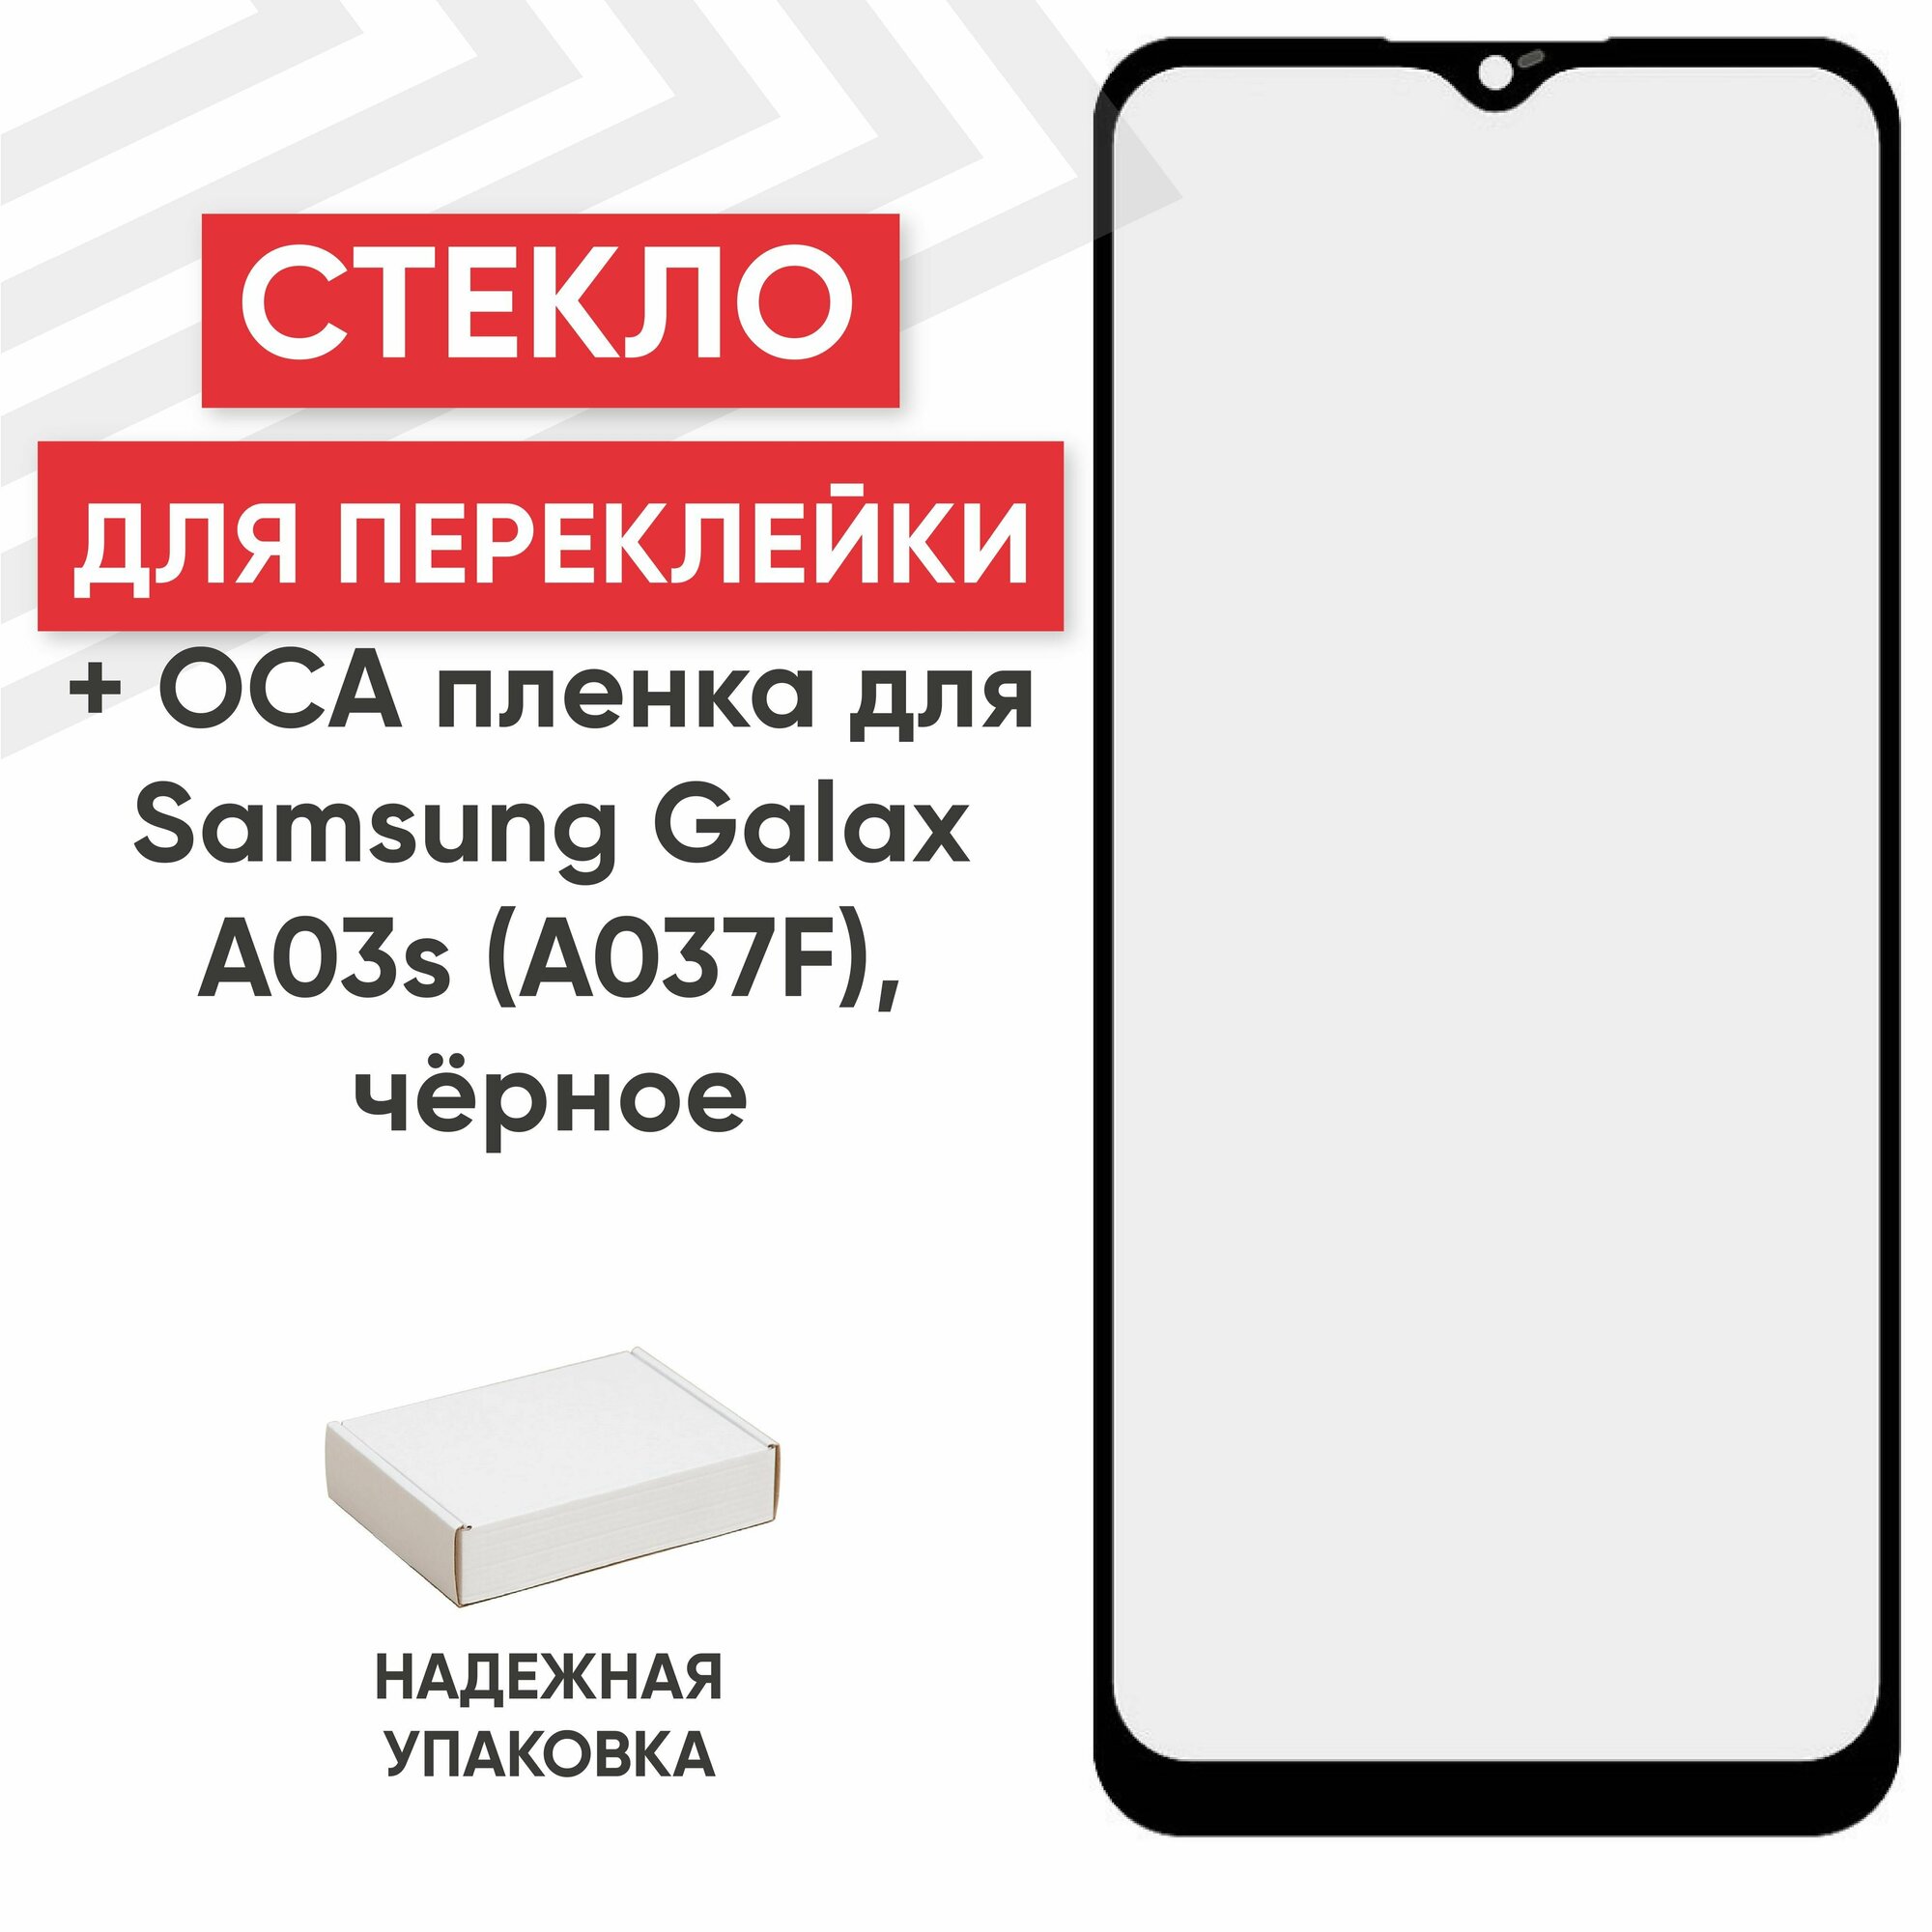 Стекло переклейки дисплея c OCA пленкой для мобильного телефона (смартфона) Samsung Galaxy A03s (A037F), черное